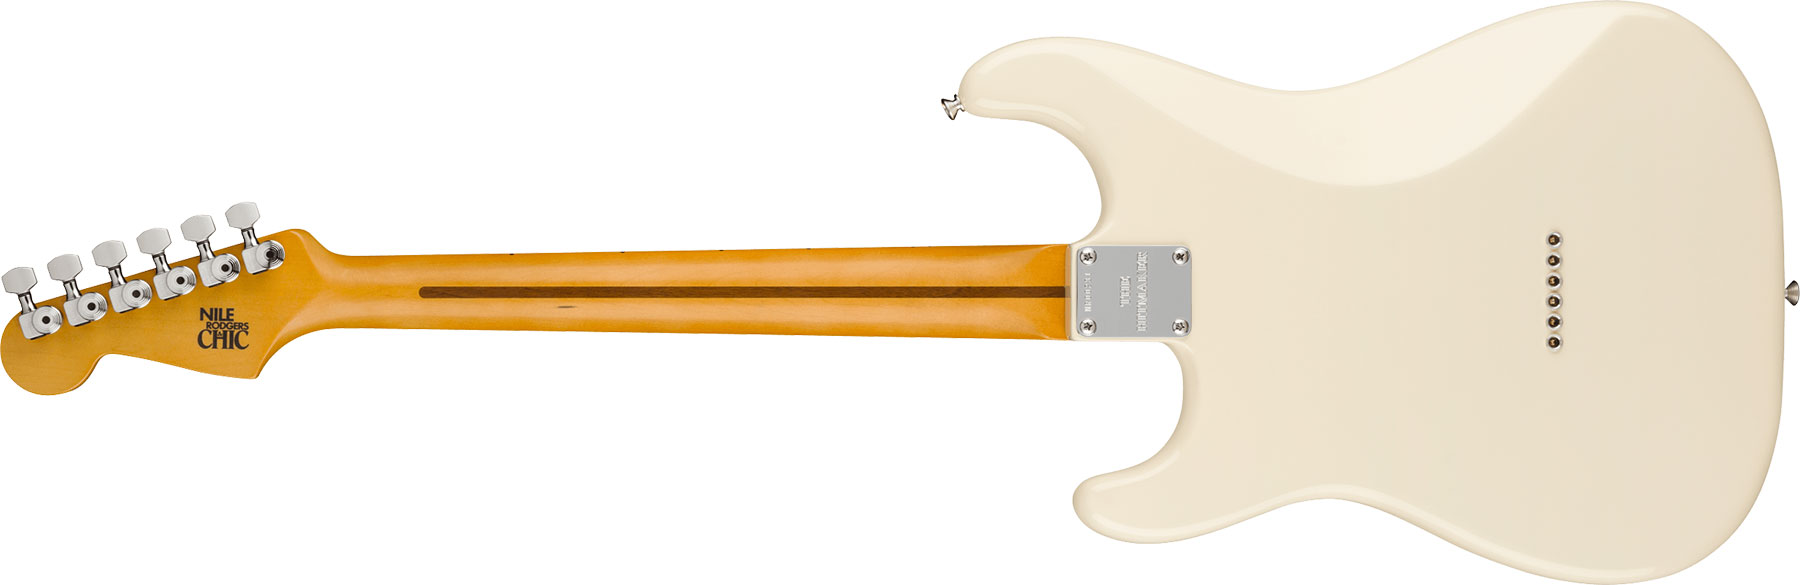 Fender Nile Rodgers Strat Hitmaker Usa Signature 3s Ht Mn - Olympic White - E-Gitarre in Str-Form - Variation 1